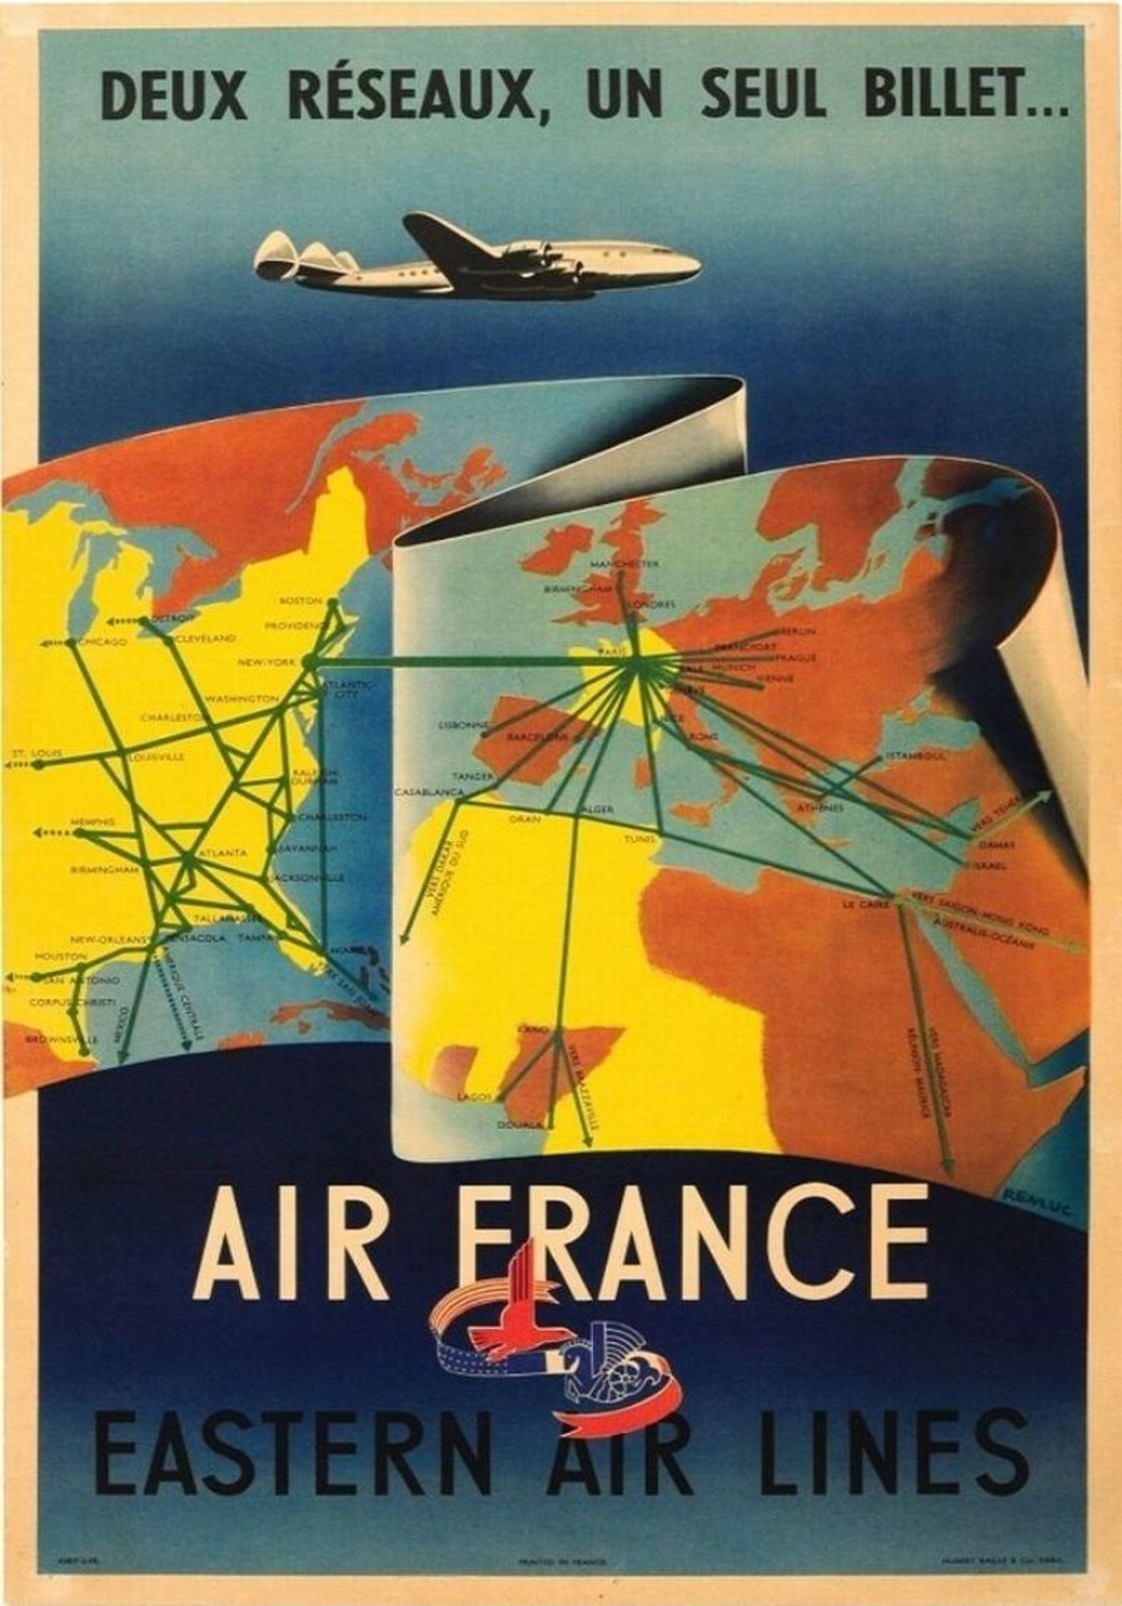 Air France Eastern Air Lines 1950 - Postcard - Poster Reproduction - Publicité